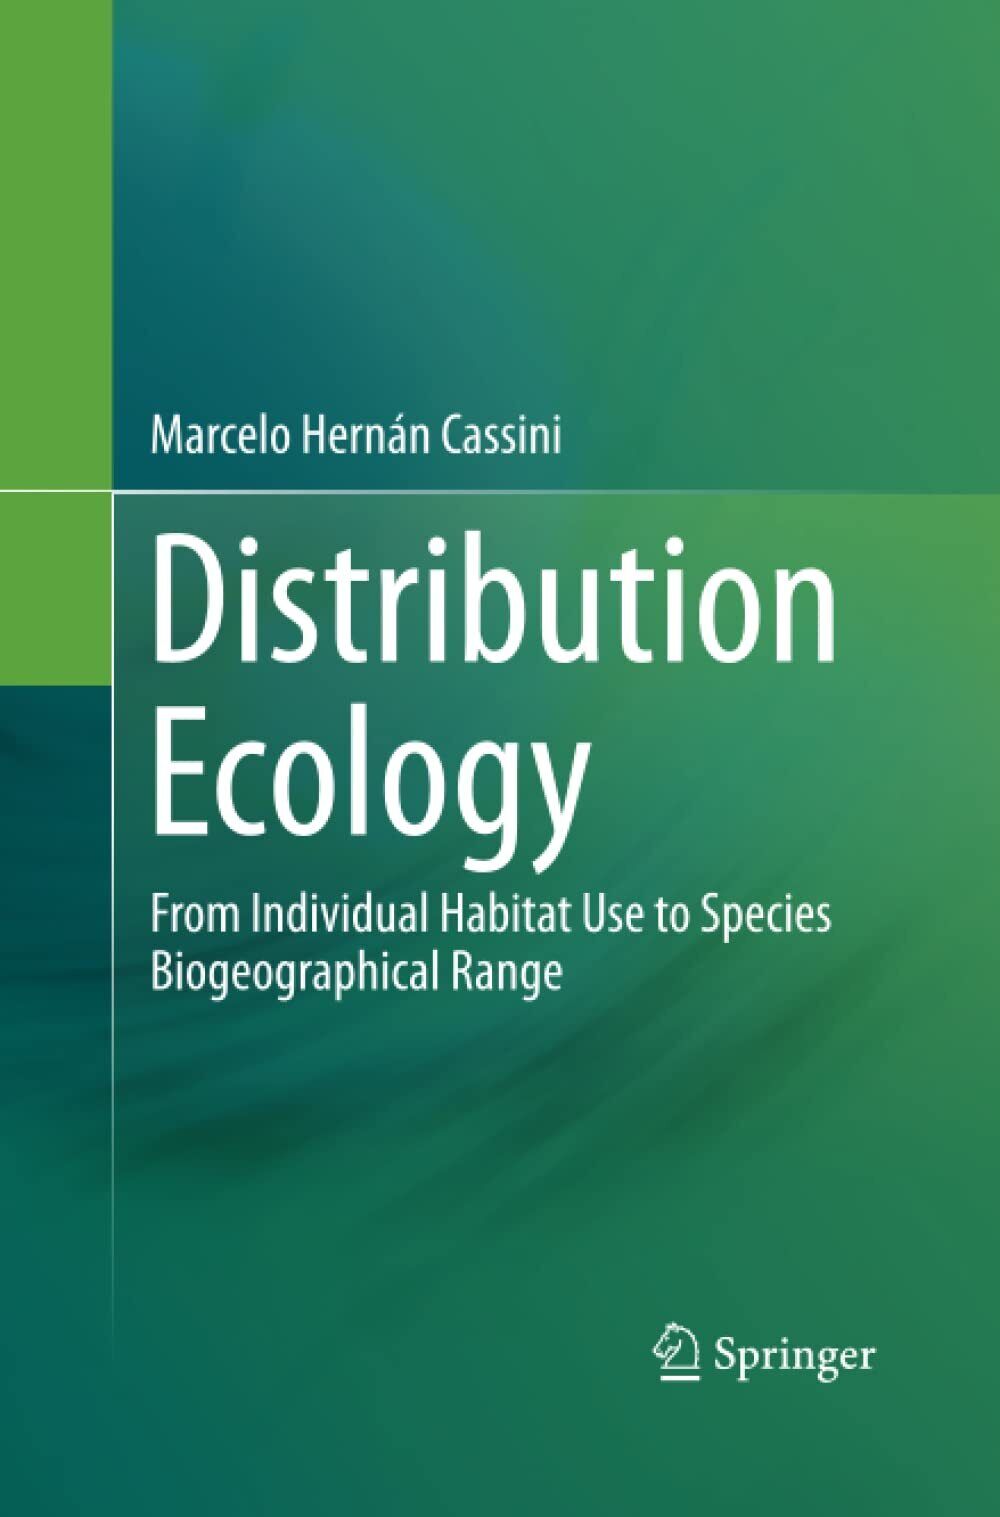 Distribution Ecology - Marcelo Hern?n Cassini - Springer, 2015 libro usato